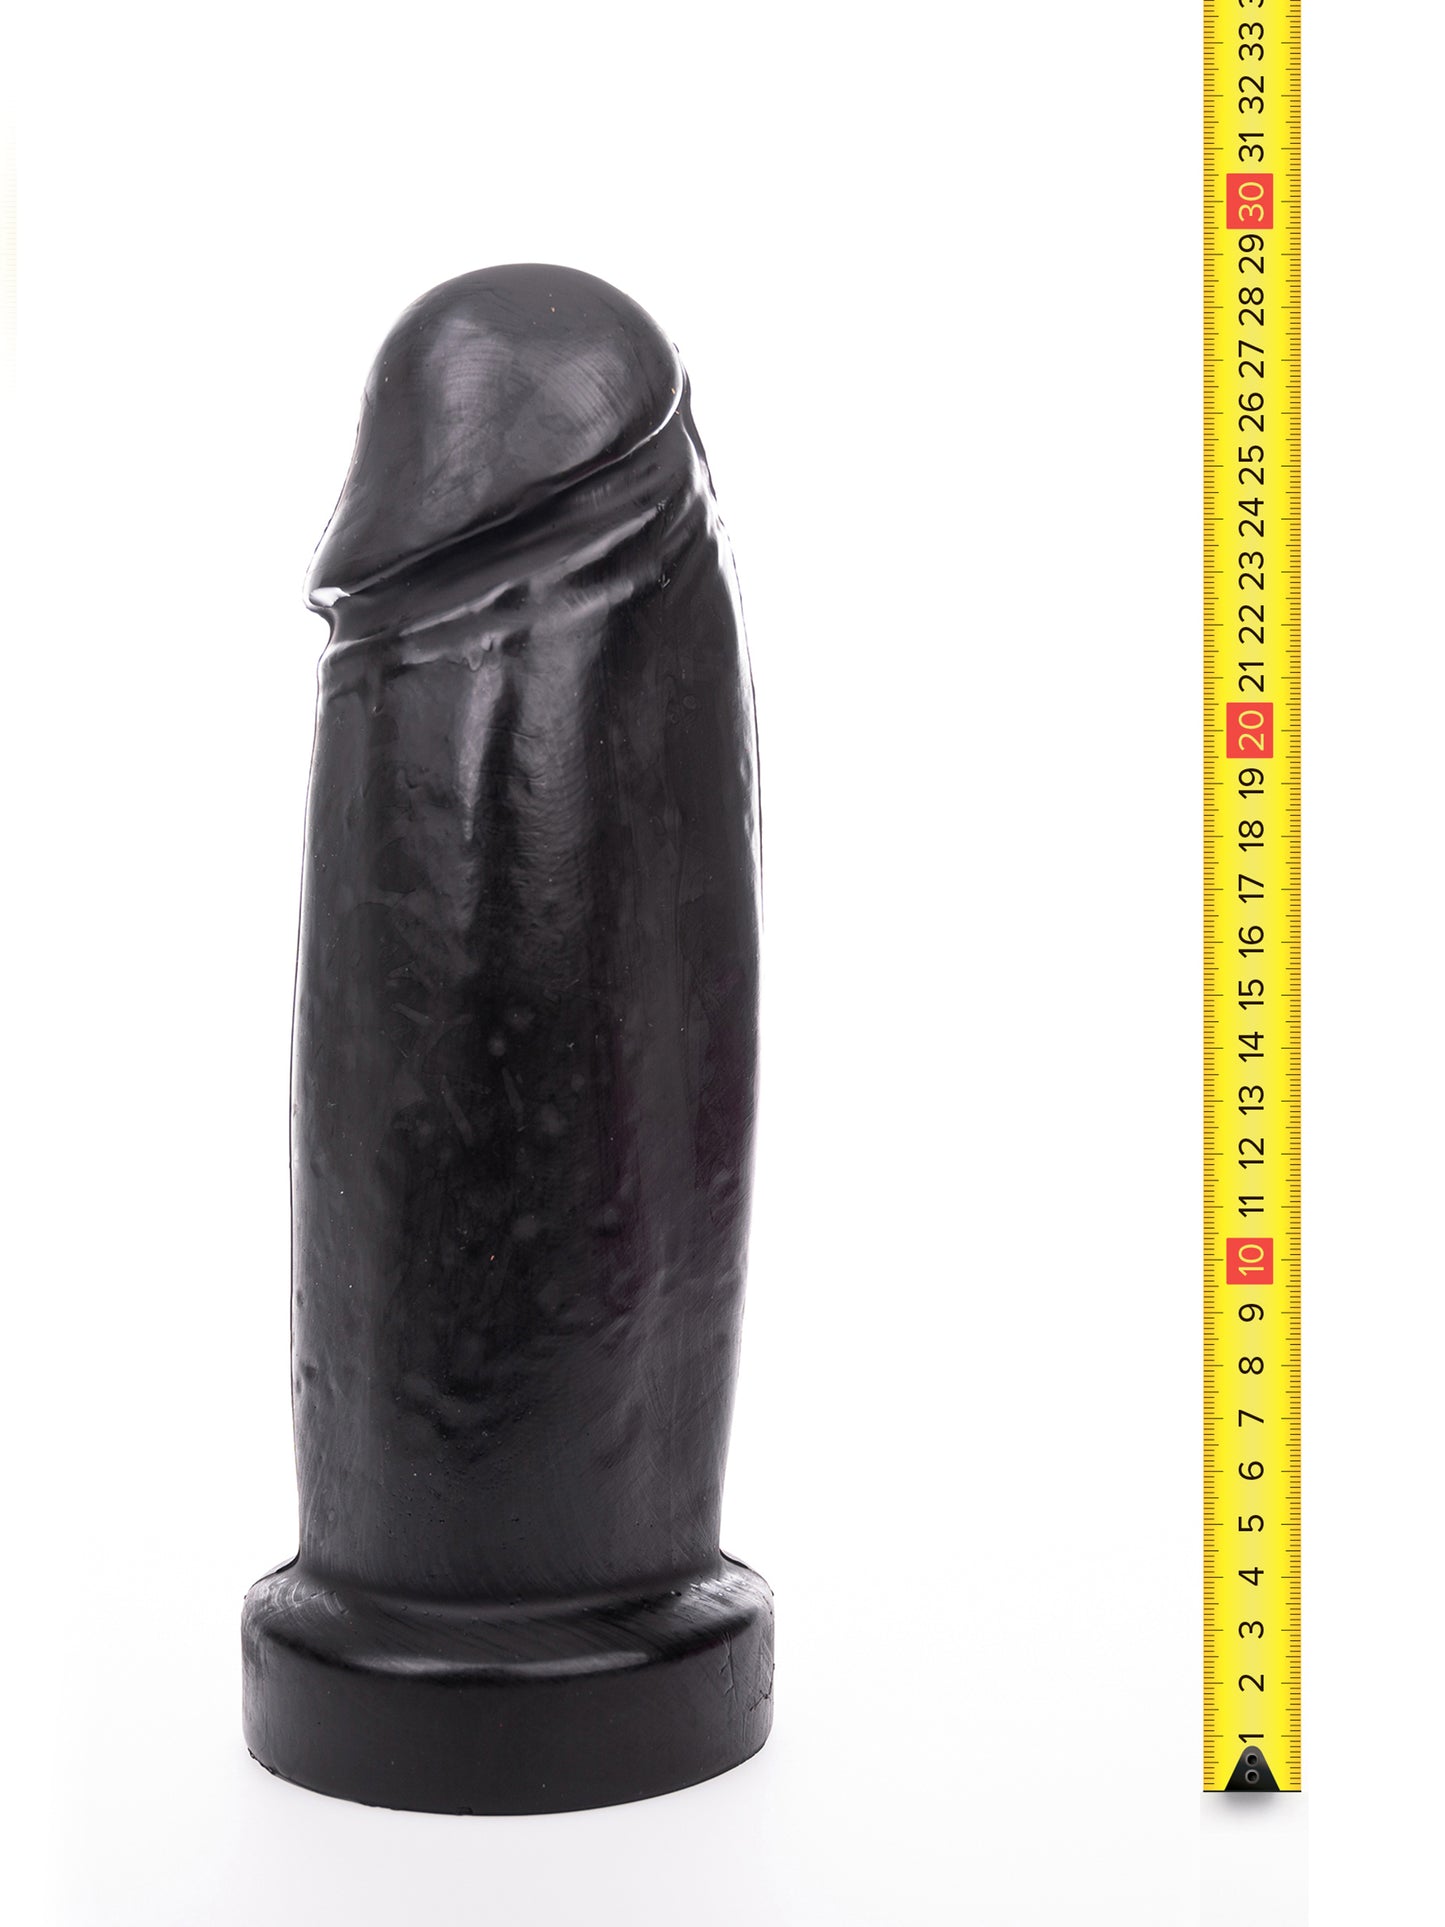 Hung System - Dildo Schlong Pene Realista Grueso sin testículos 28 cm - Negro